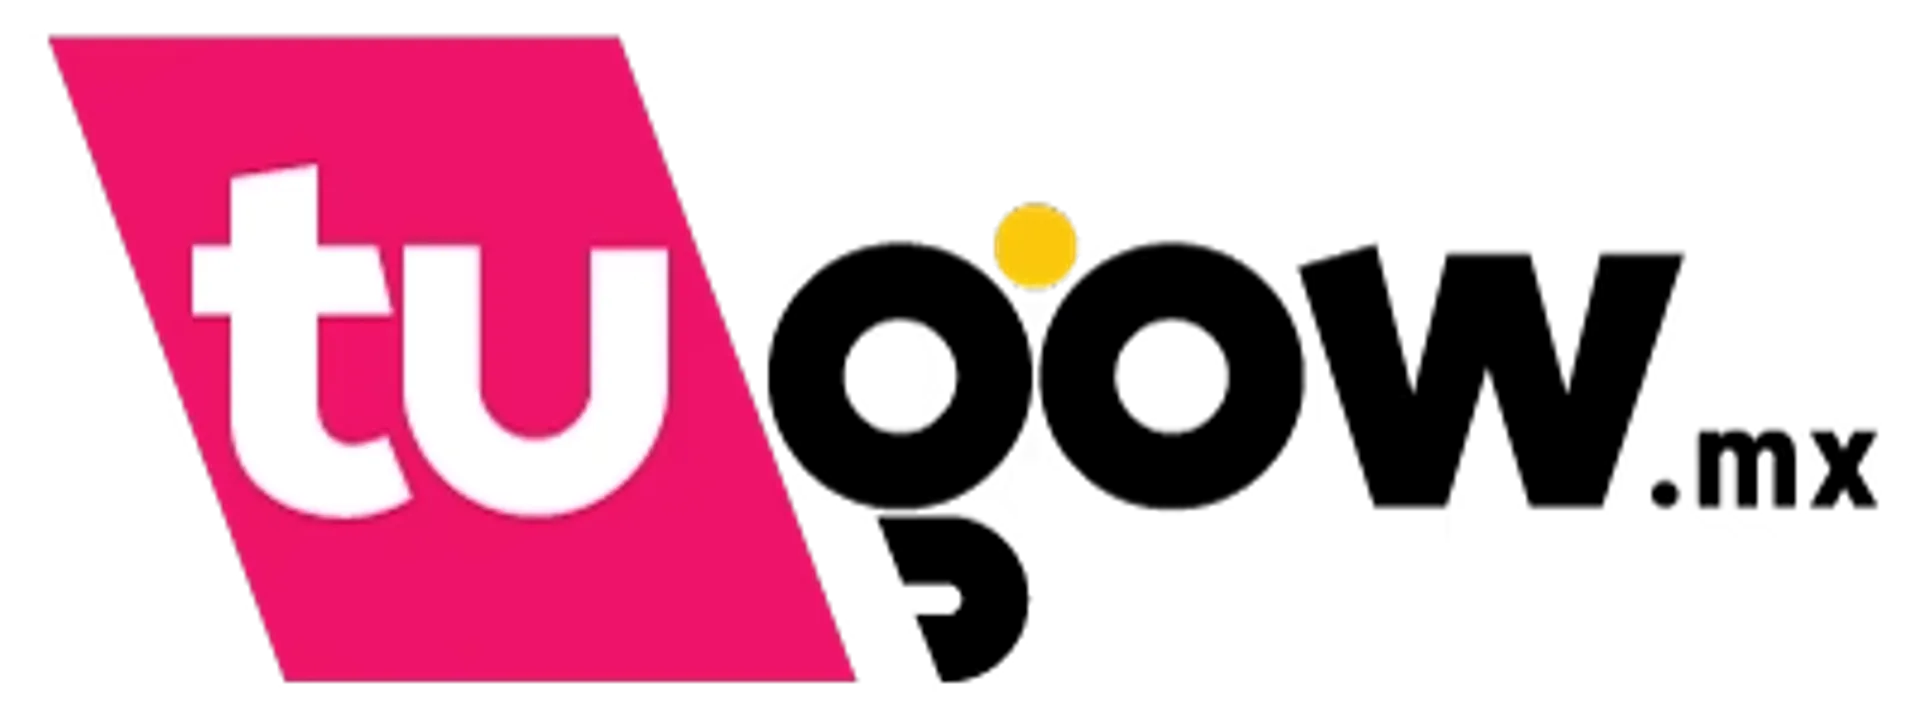 TUGOW logo